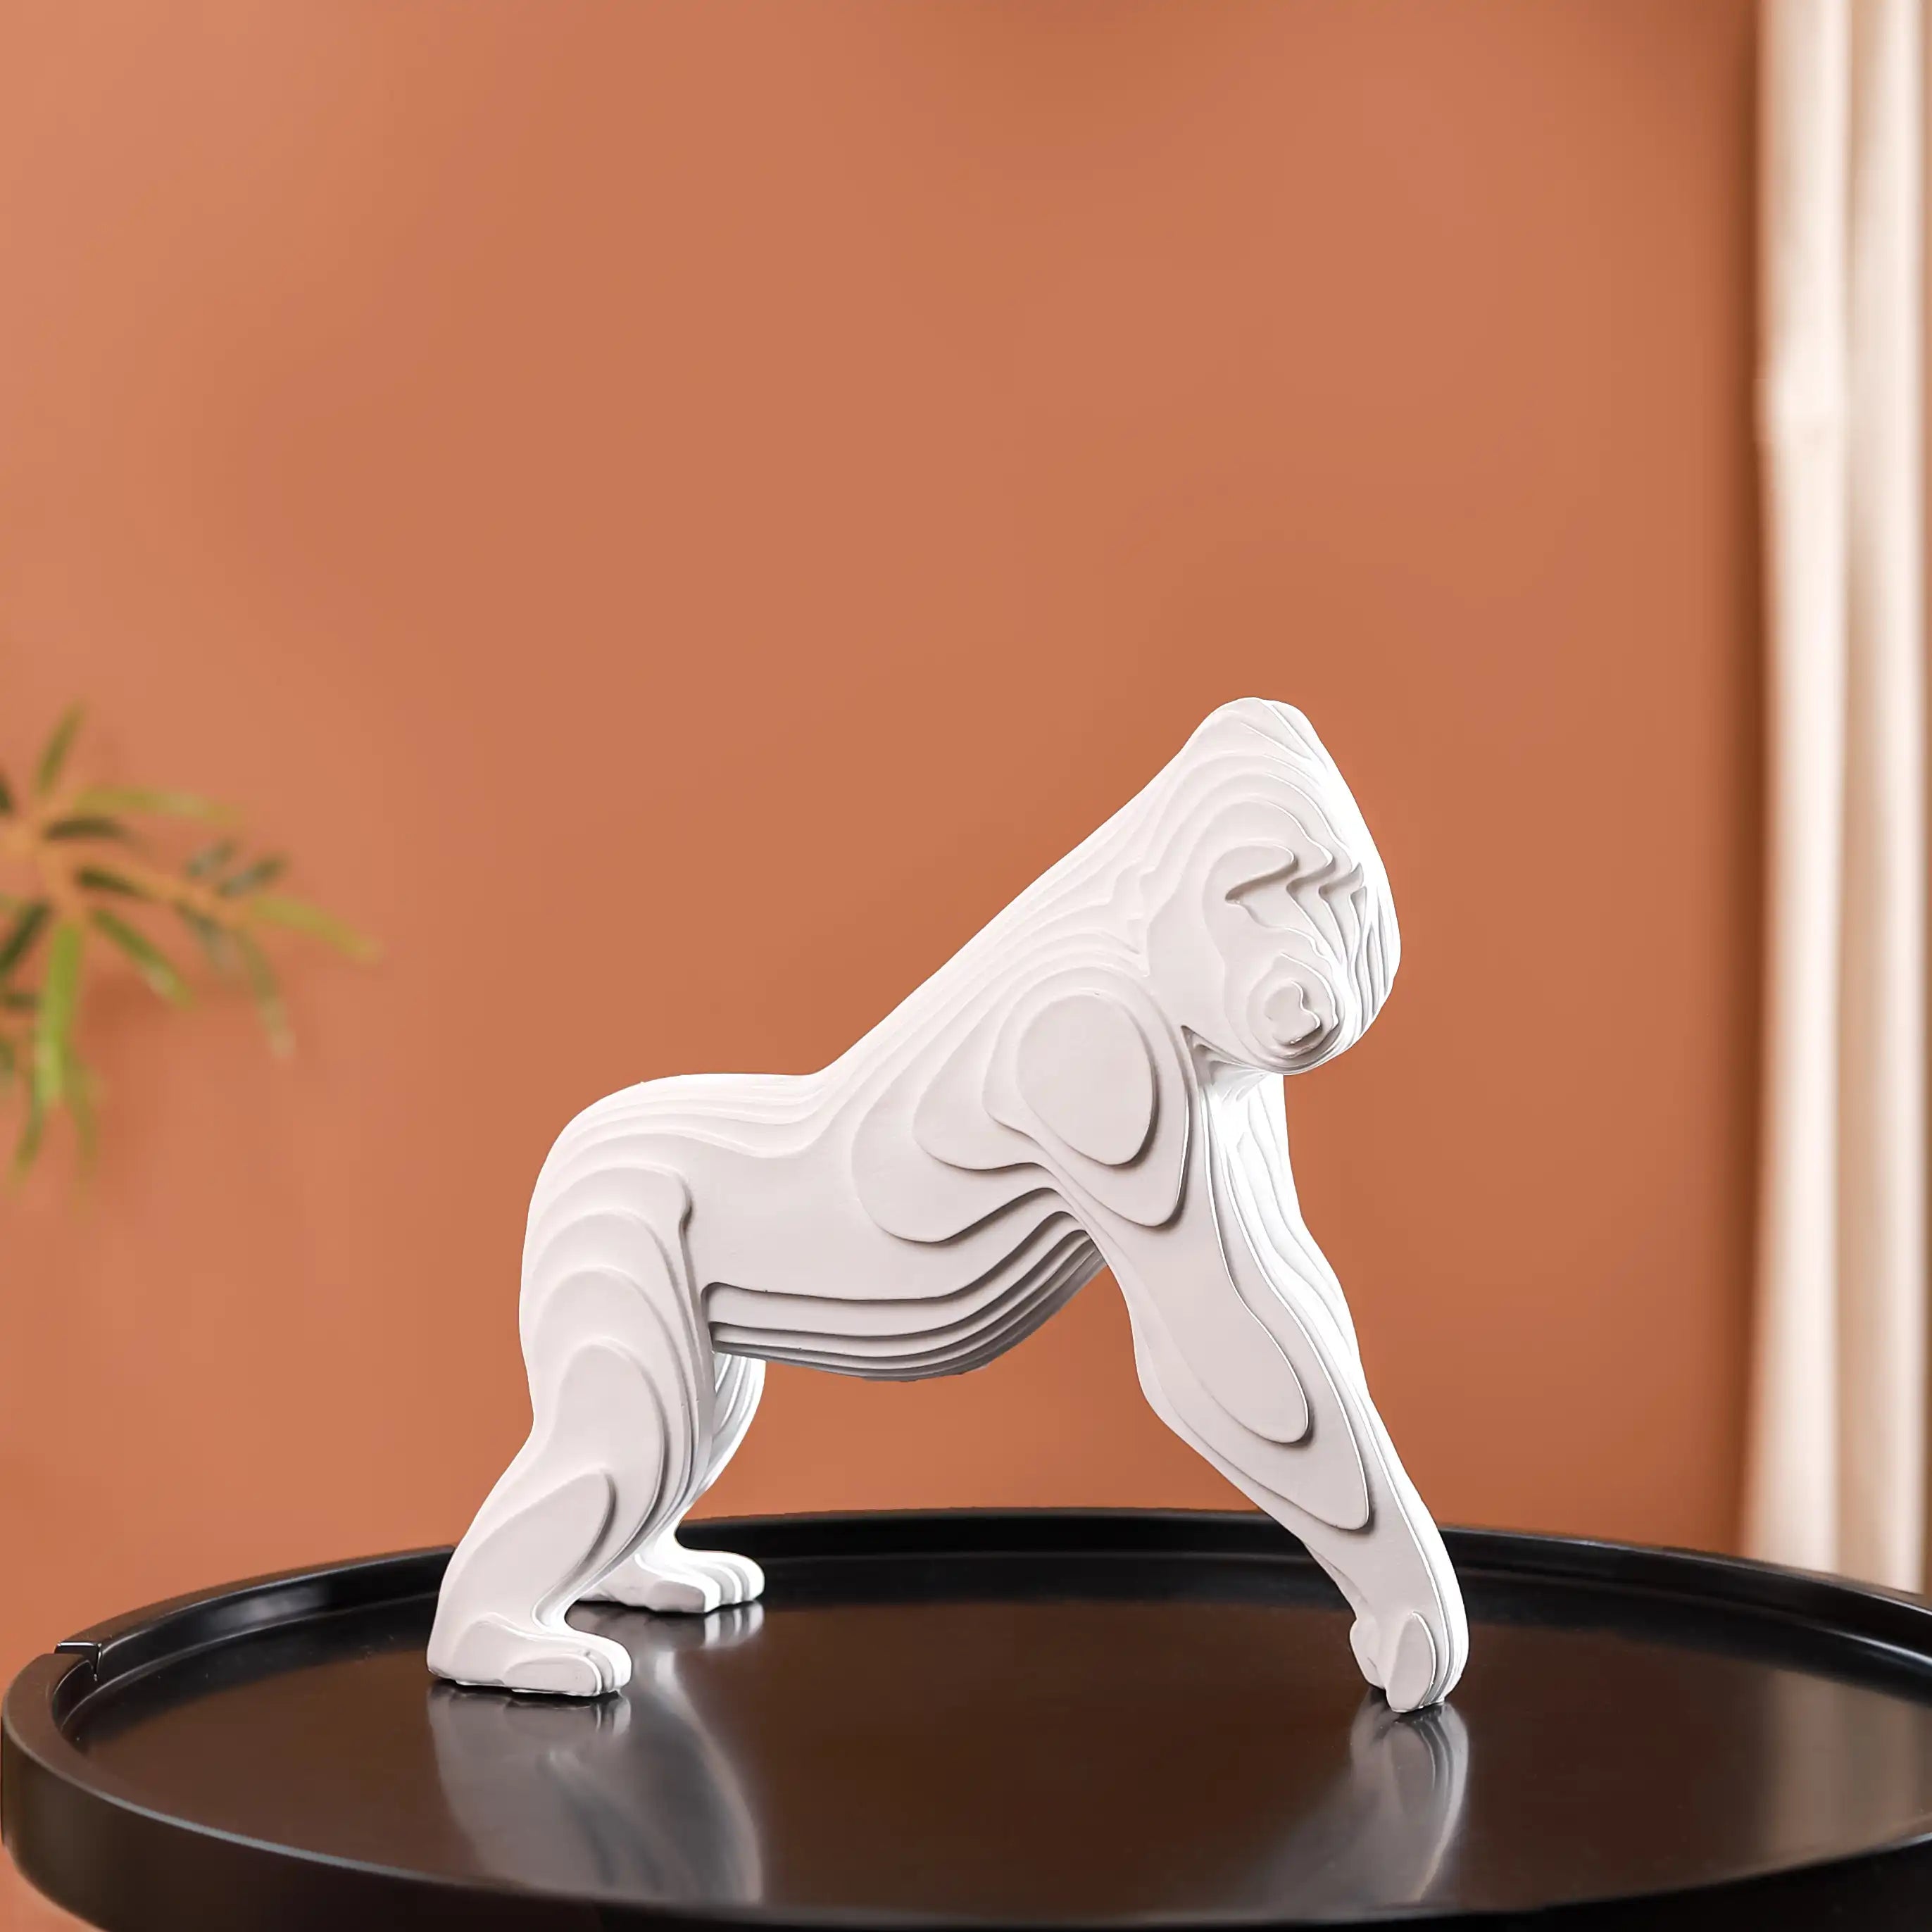 Antique Silver Gorilla Figurine Majestic Animal Sculpture for Home Decor 